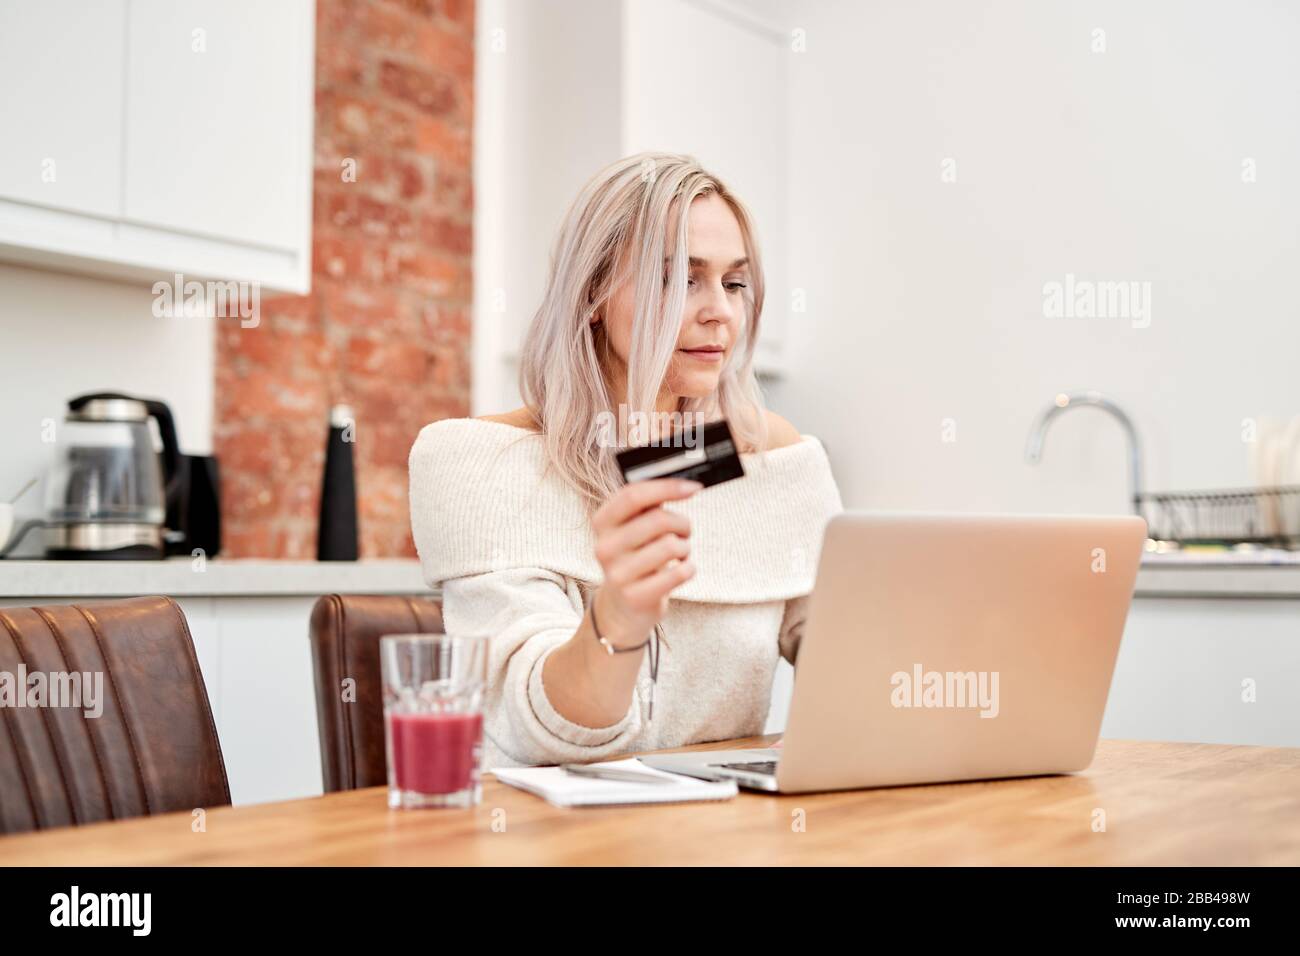 Una singola femmina caucasica con capelli biondi siede a un tavolo e guarda un laptop mentre tiene una carta bancaria Foto Stock